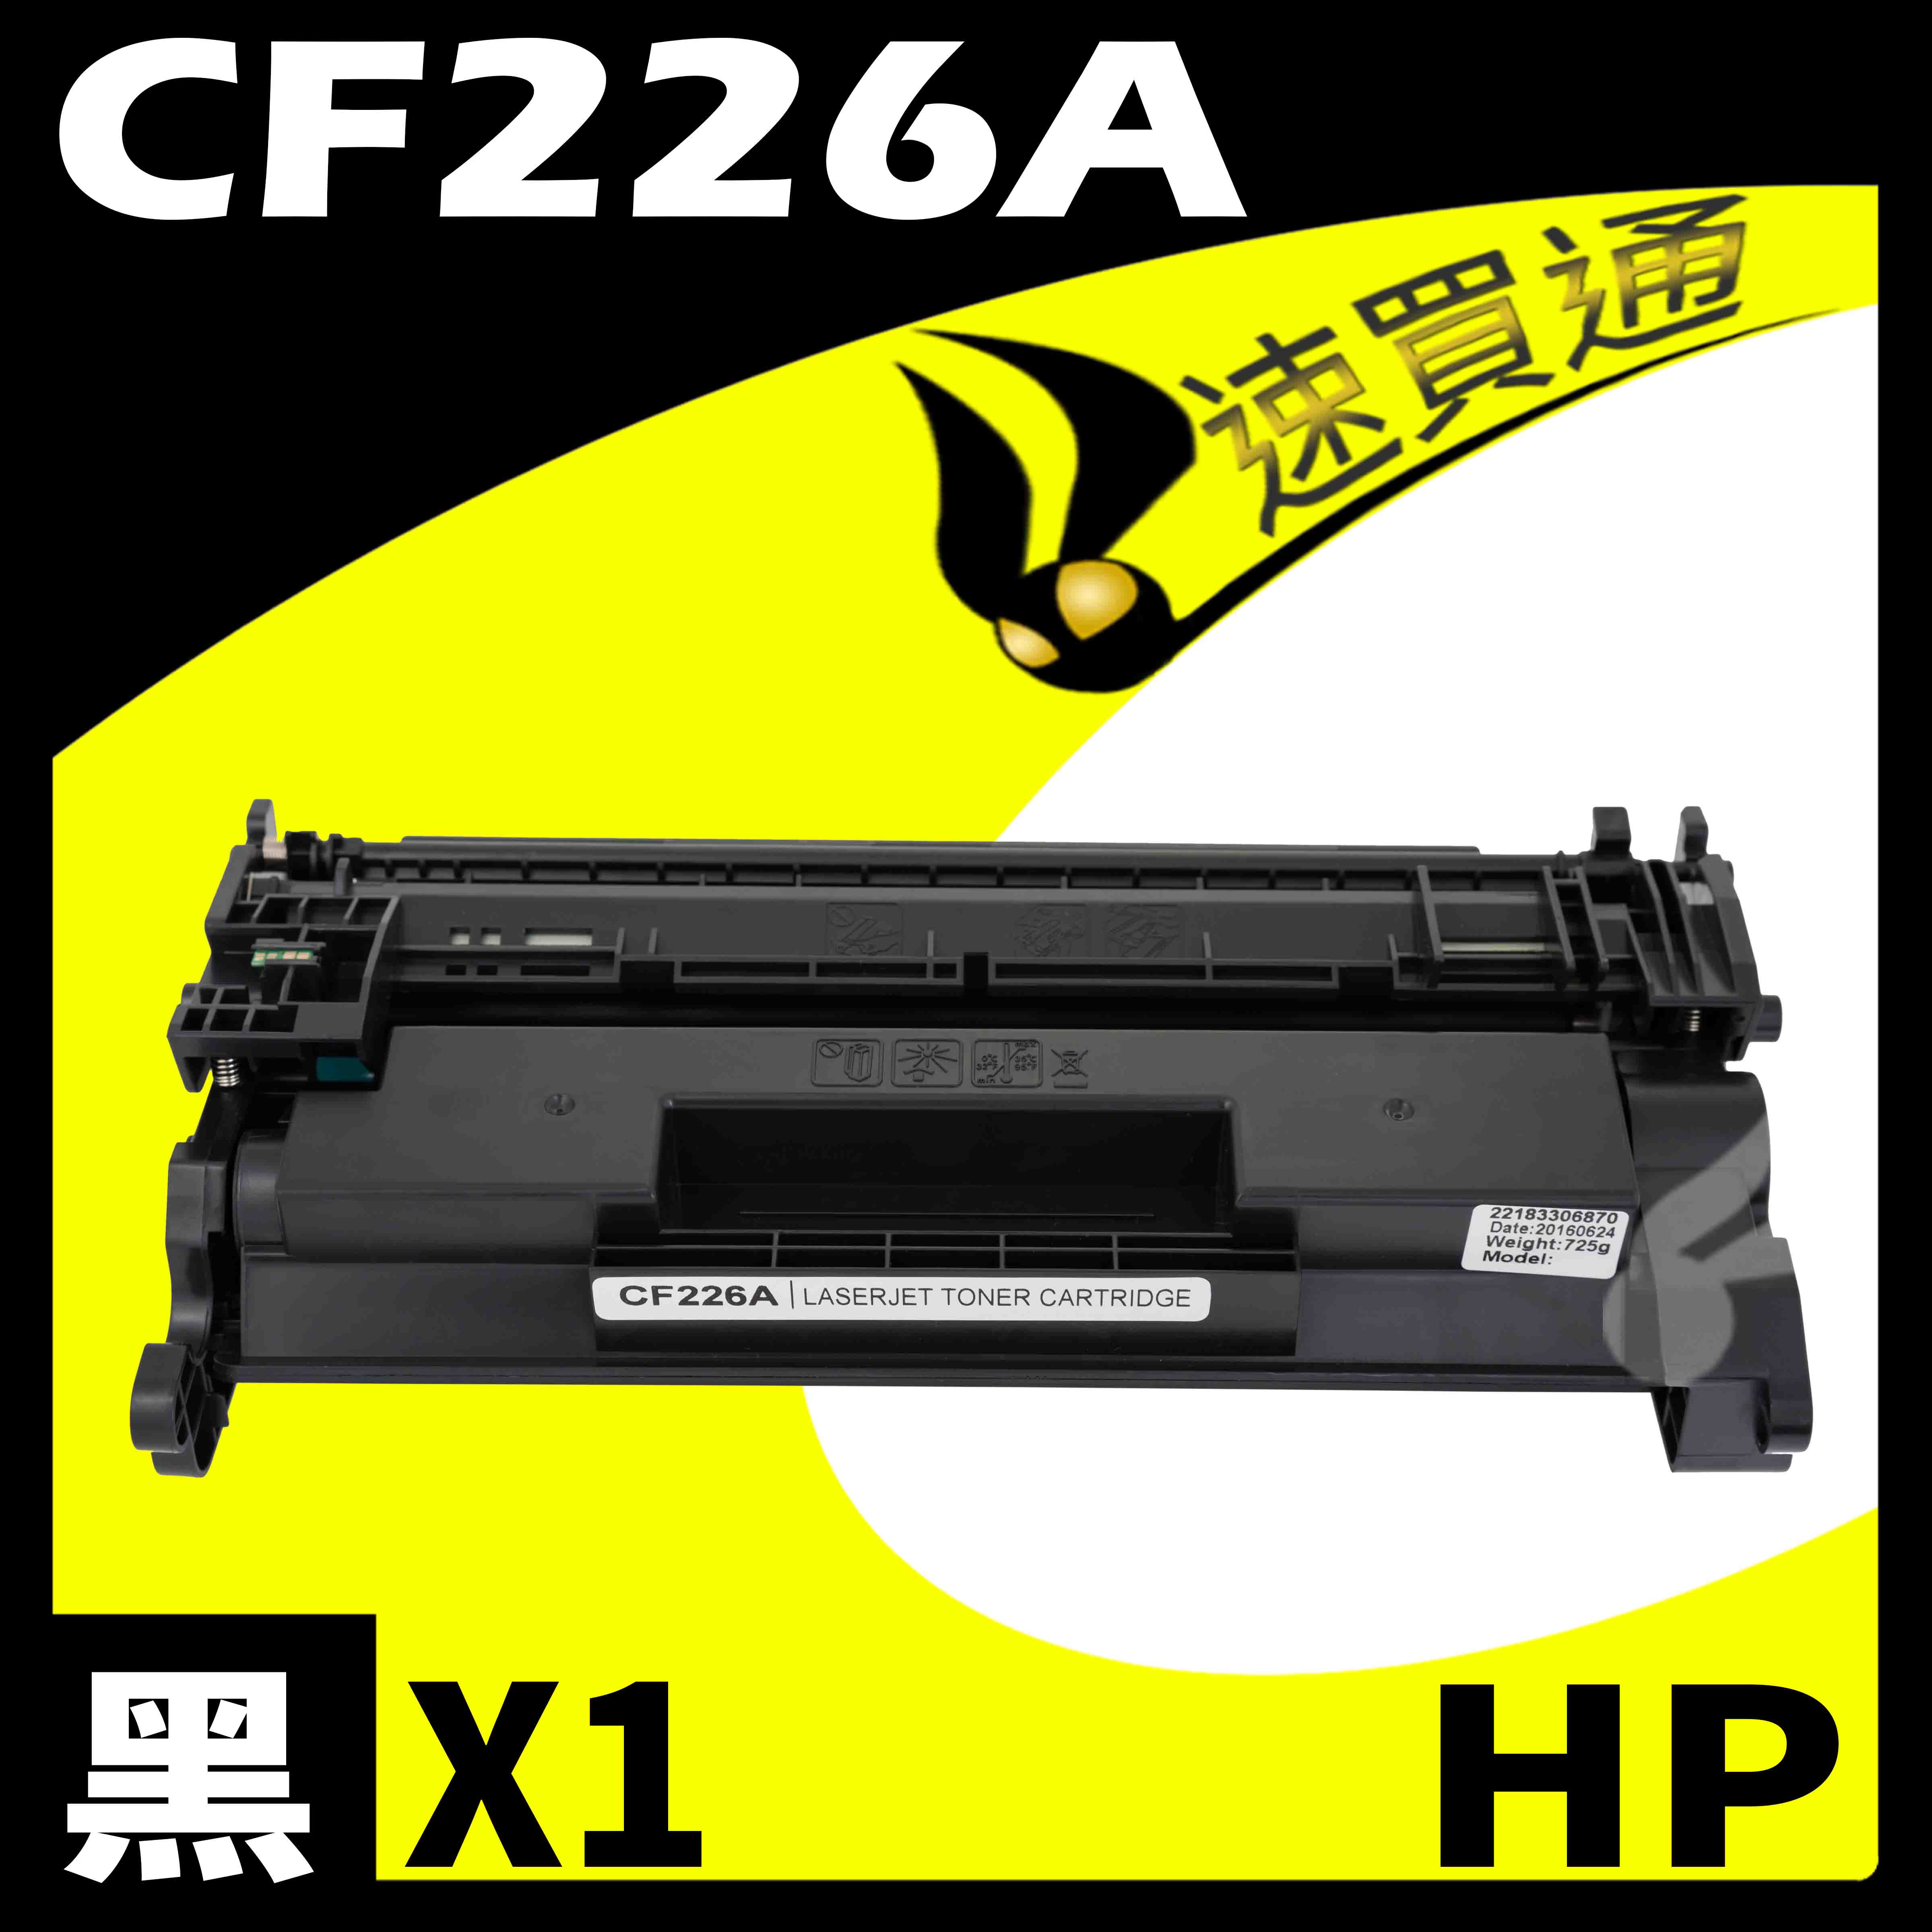 【速買通】HP CF226A 相容碳粉匣 適用 M402n/M402dn/M402dw/M426fdn/M426fdw